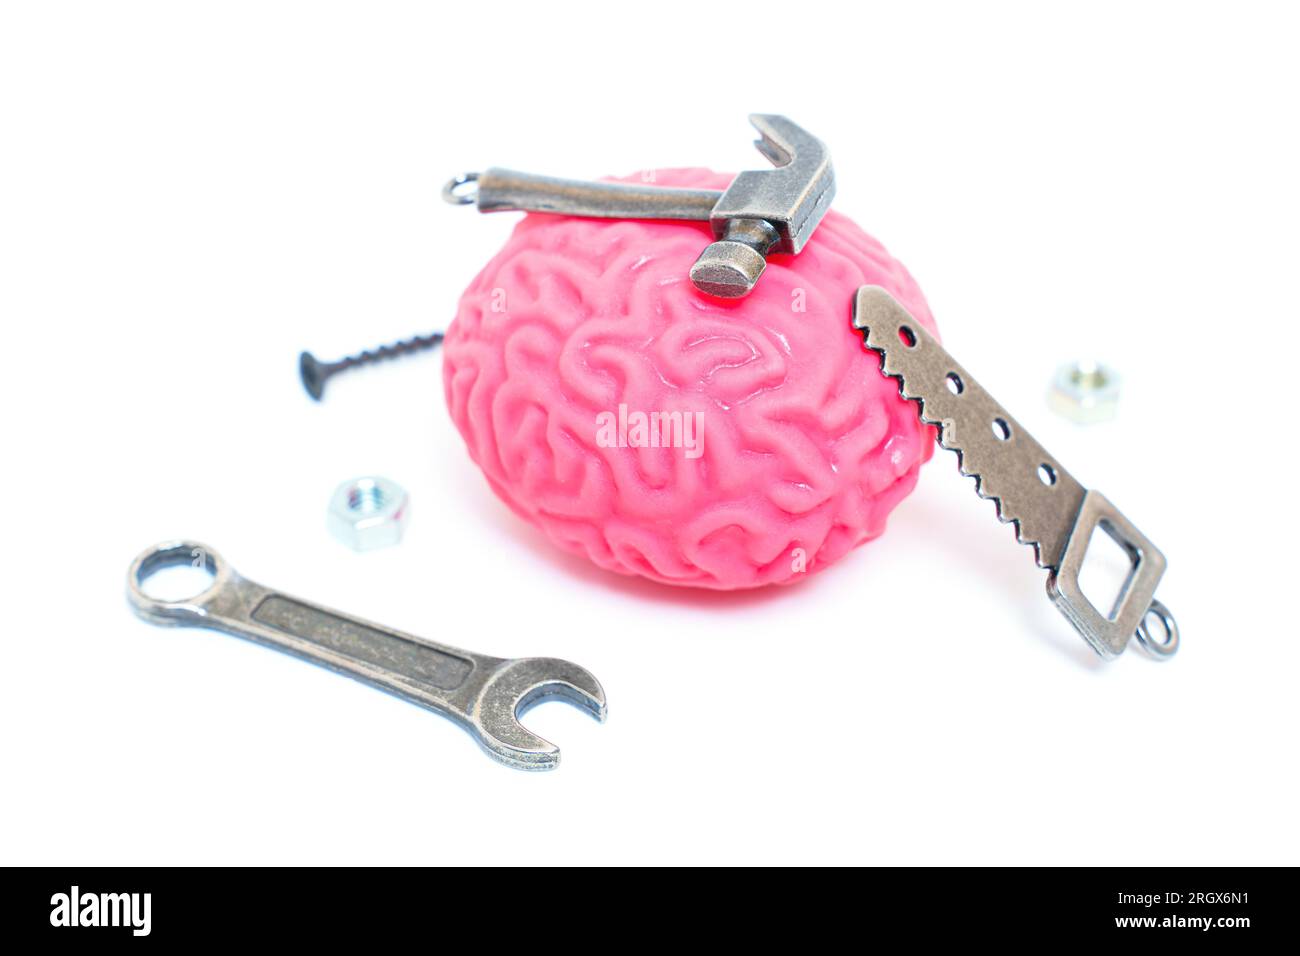 Menschliches Hirnmodell mit Miniatur-Handwerkzeugen wie Hammer, Säge, Schraubenschlüssel und Befestigungselemente, die das Konzept der „Fixierung“ und der Adressin symbolisieren Stockfoto